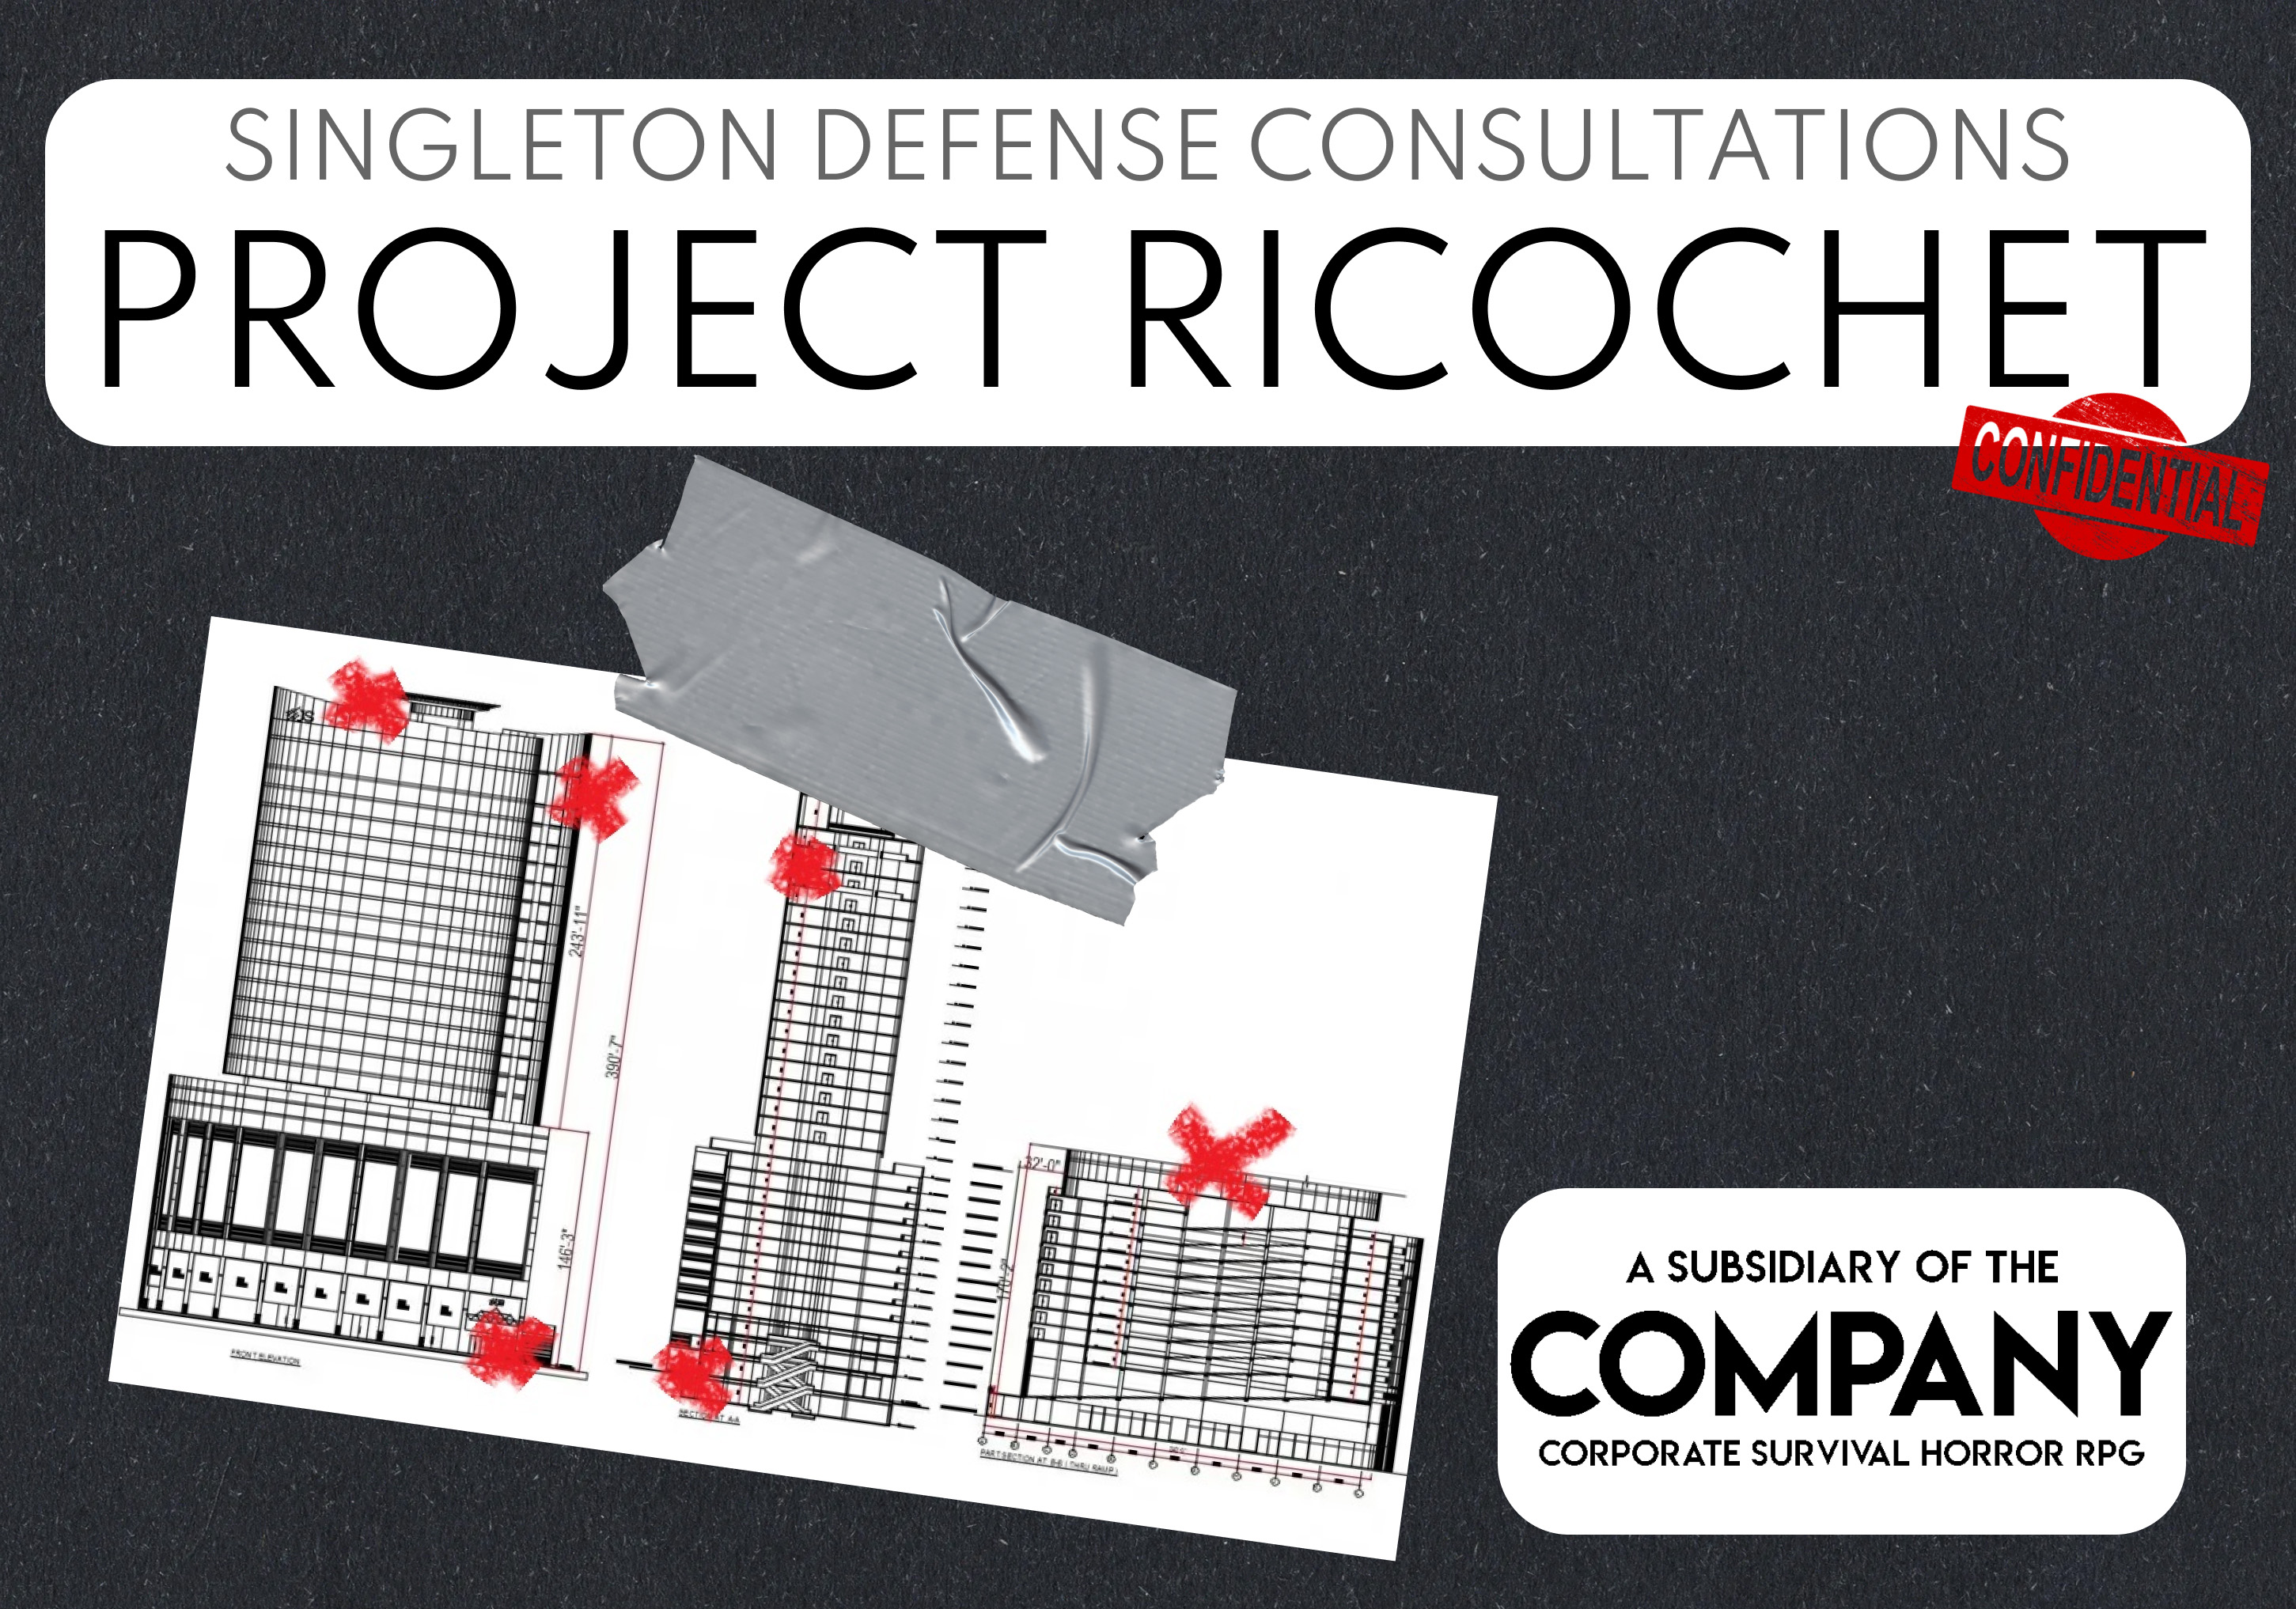 THE COMPANY: Project Ricochet